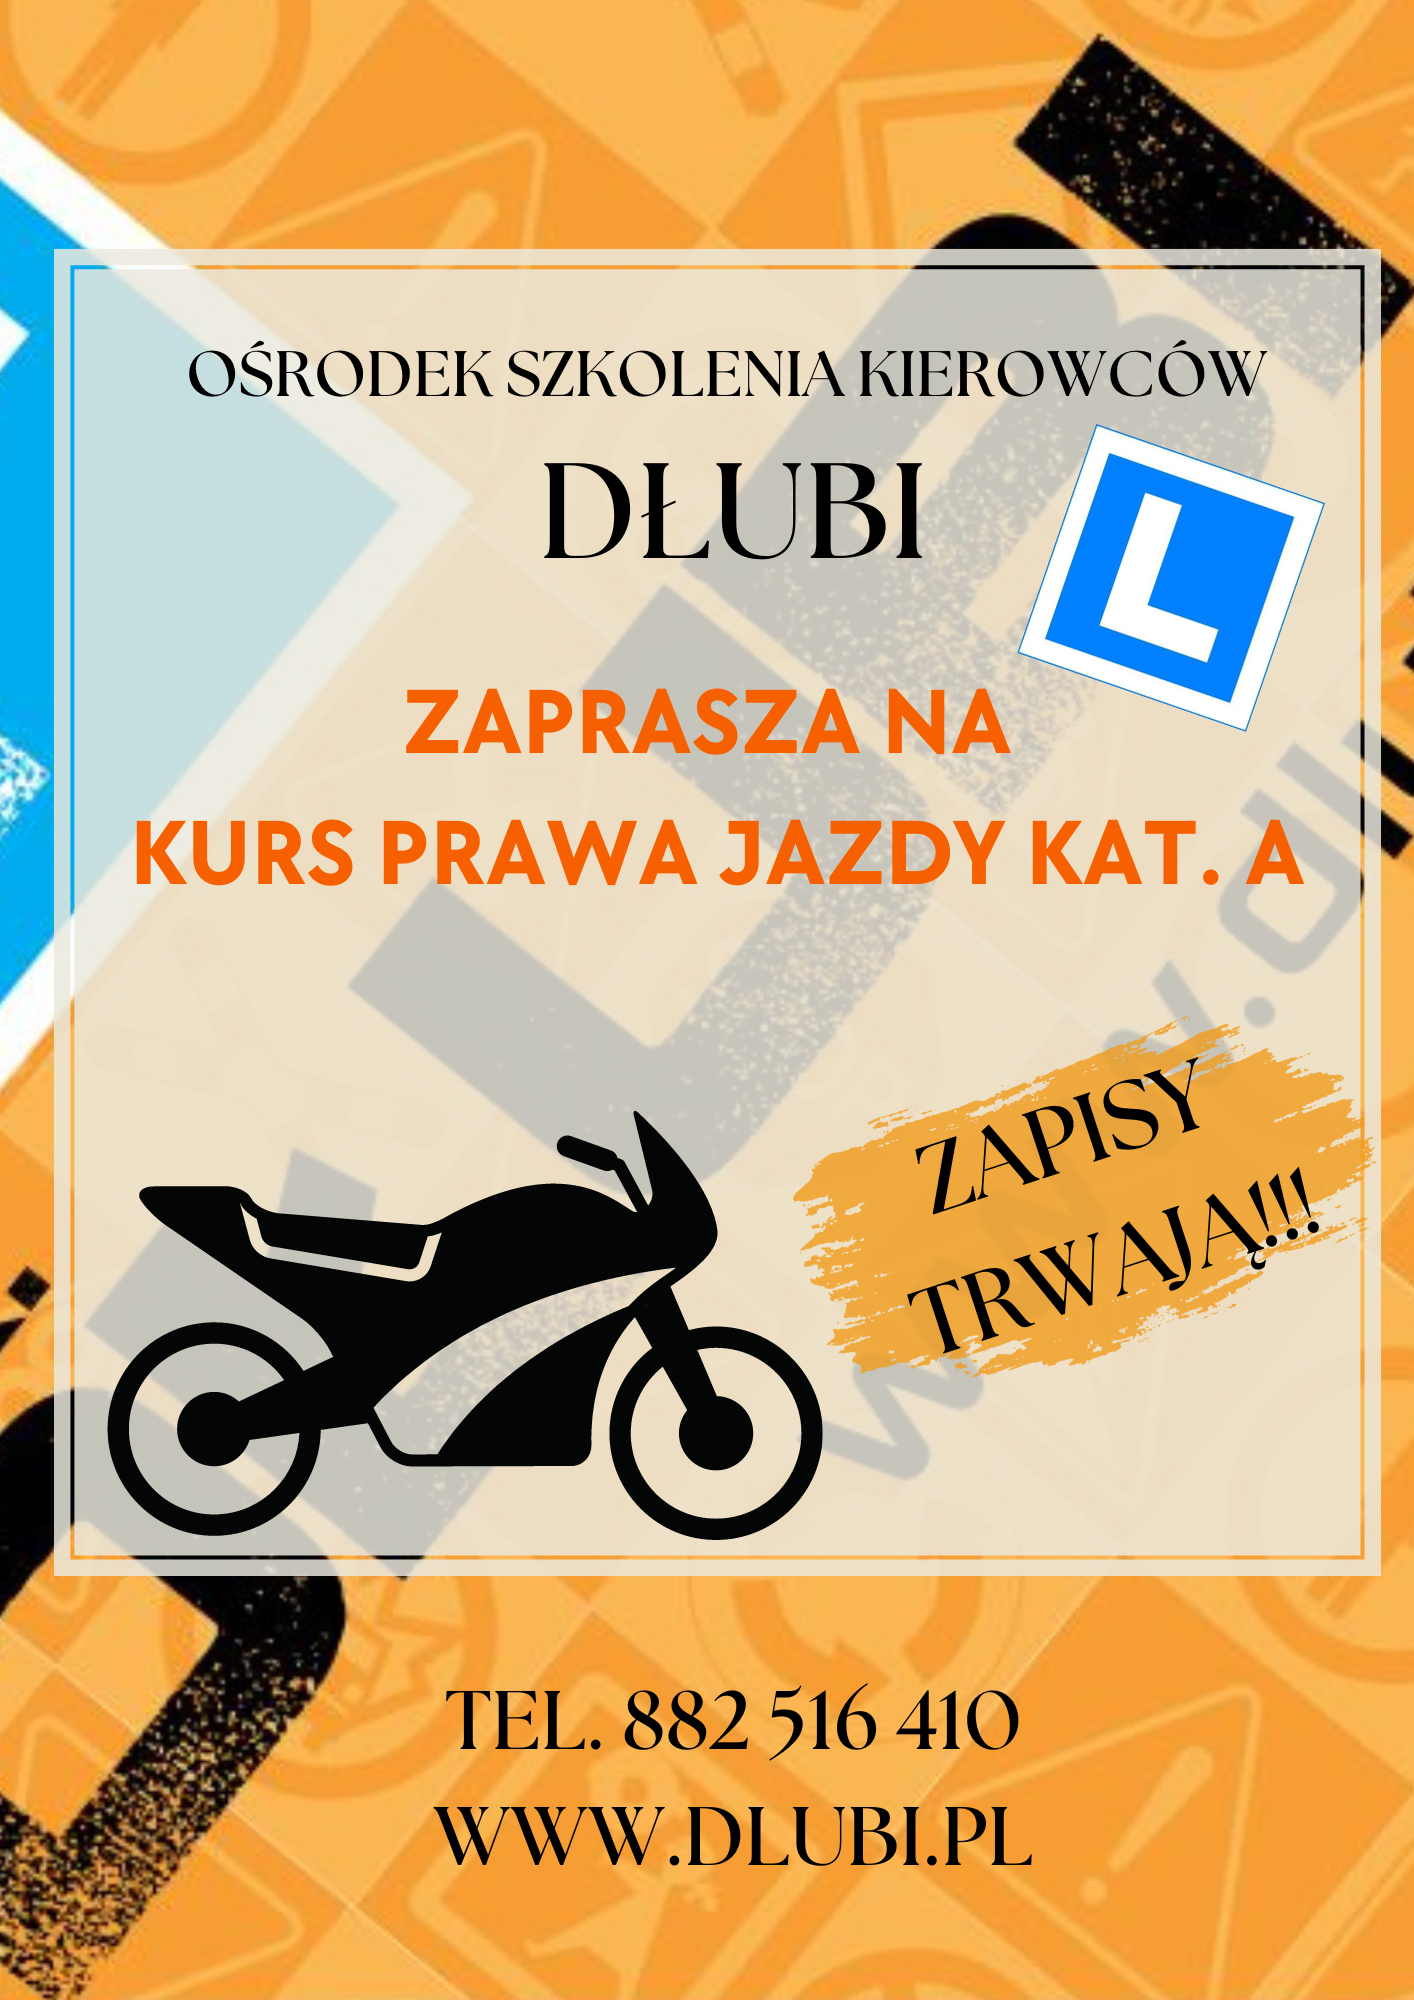 You are currently viewing Kurs Prawa Jazdy kat. A u DŁUBIEGO!